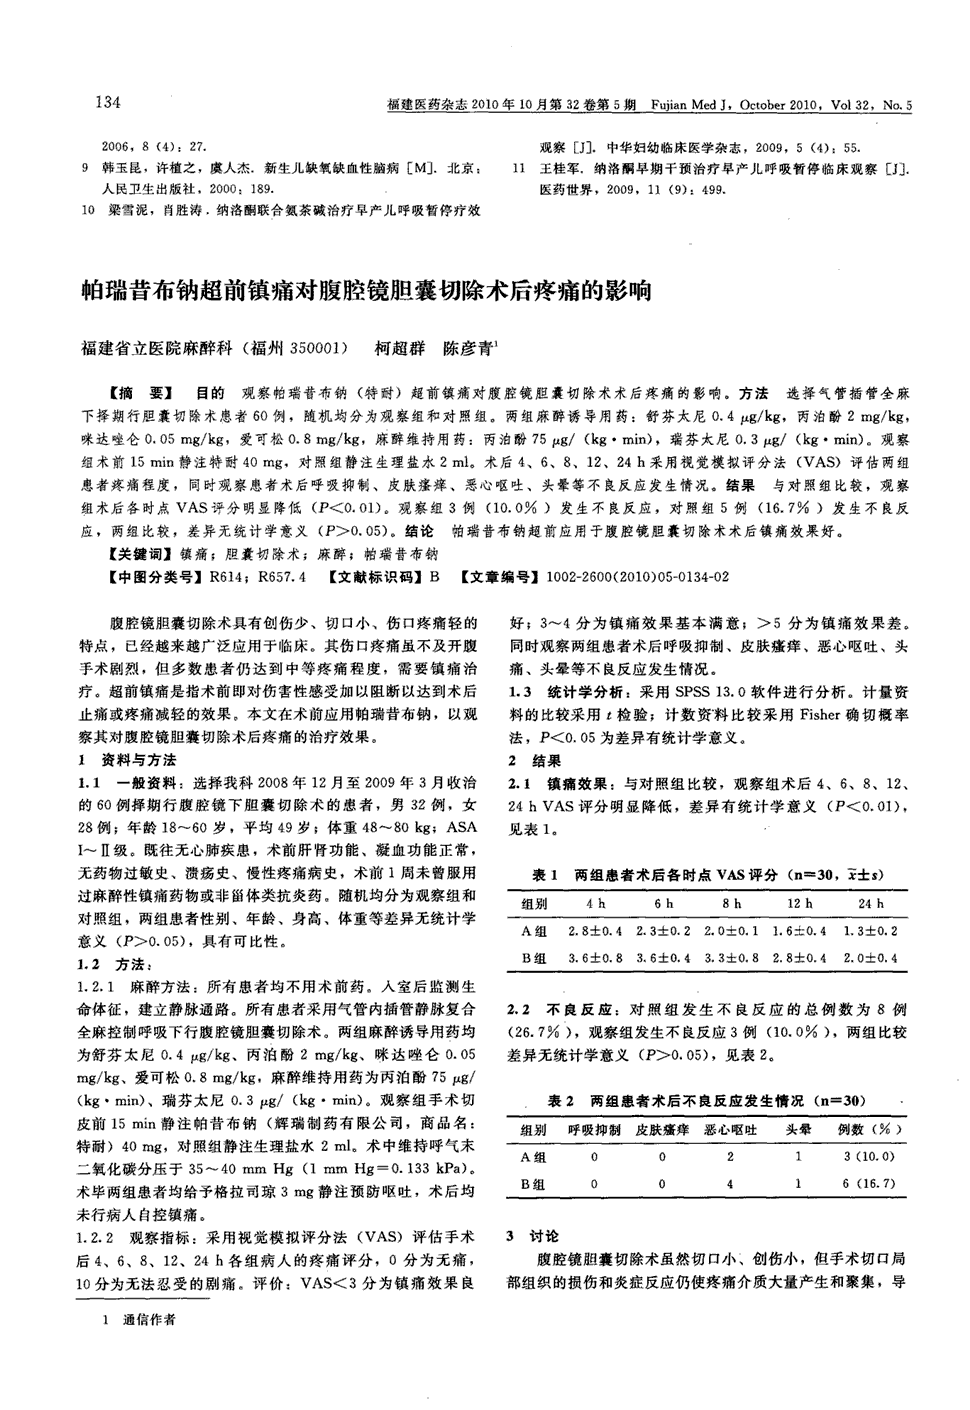 《福建医药杂志》2010年第5期 134-135,共2页柯超群陈彦青